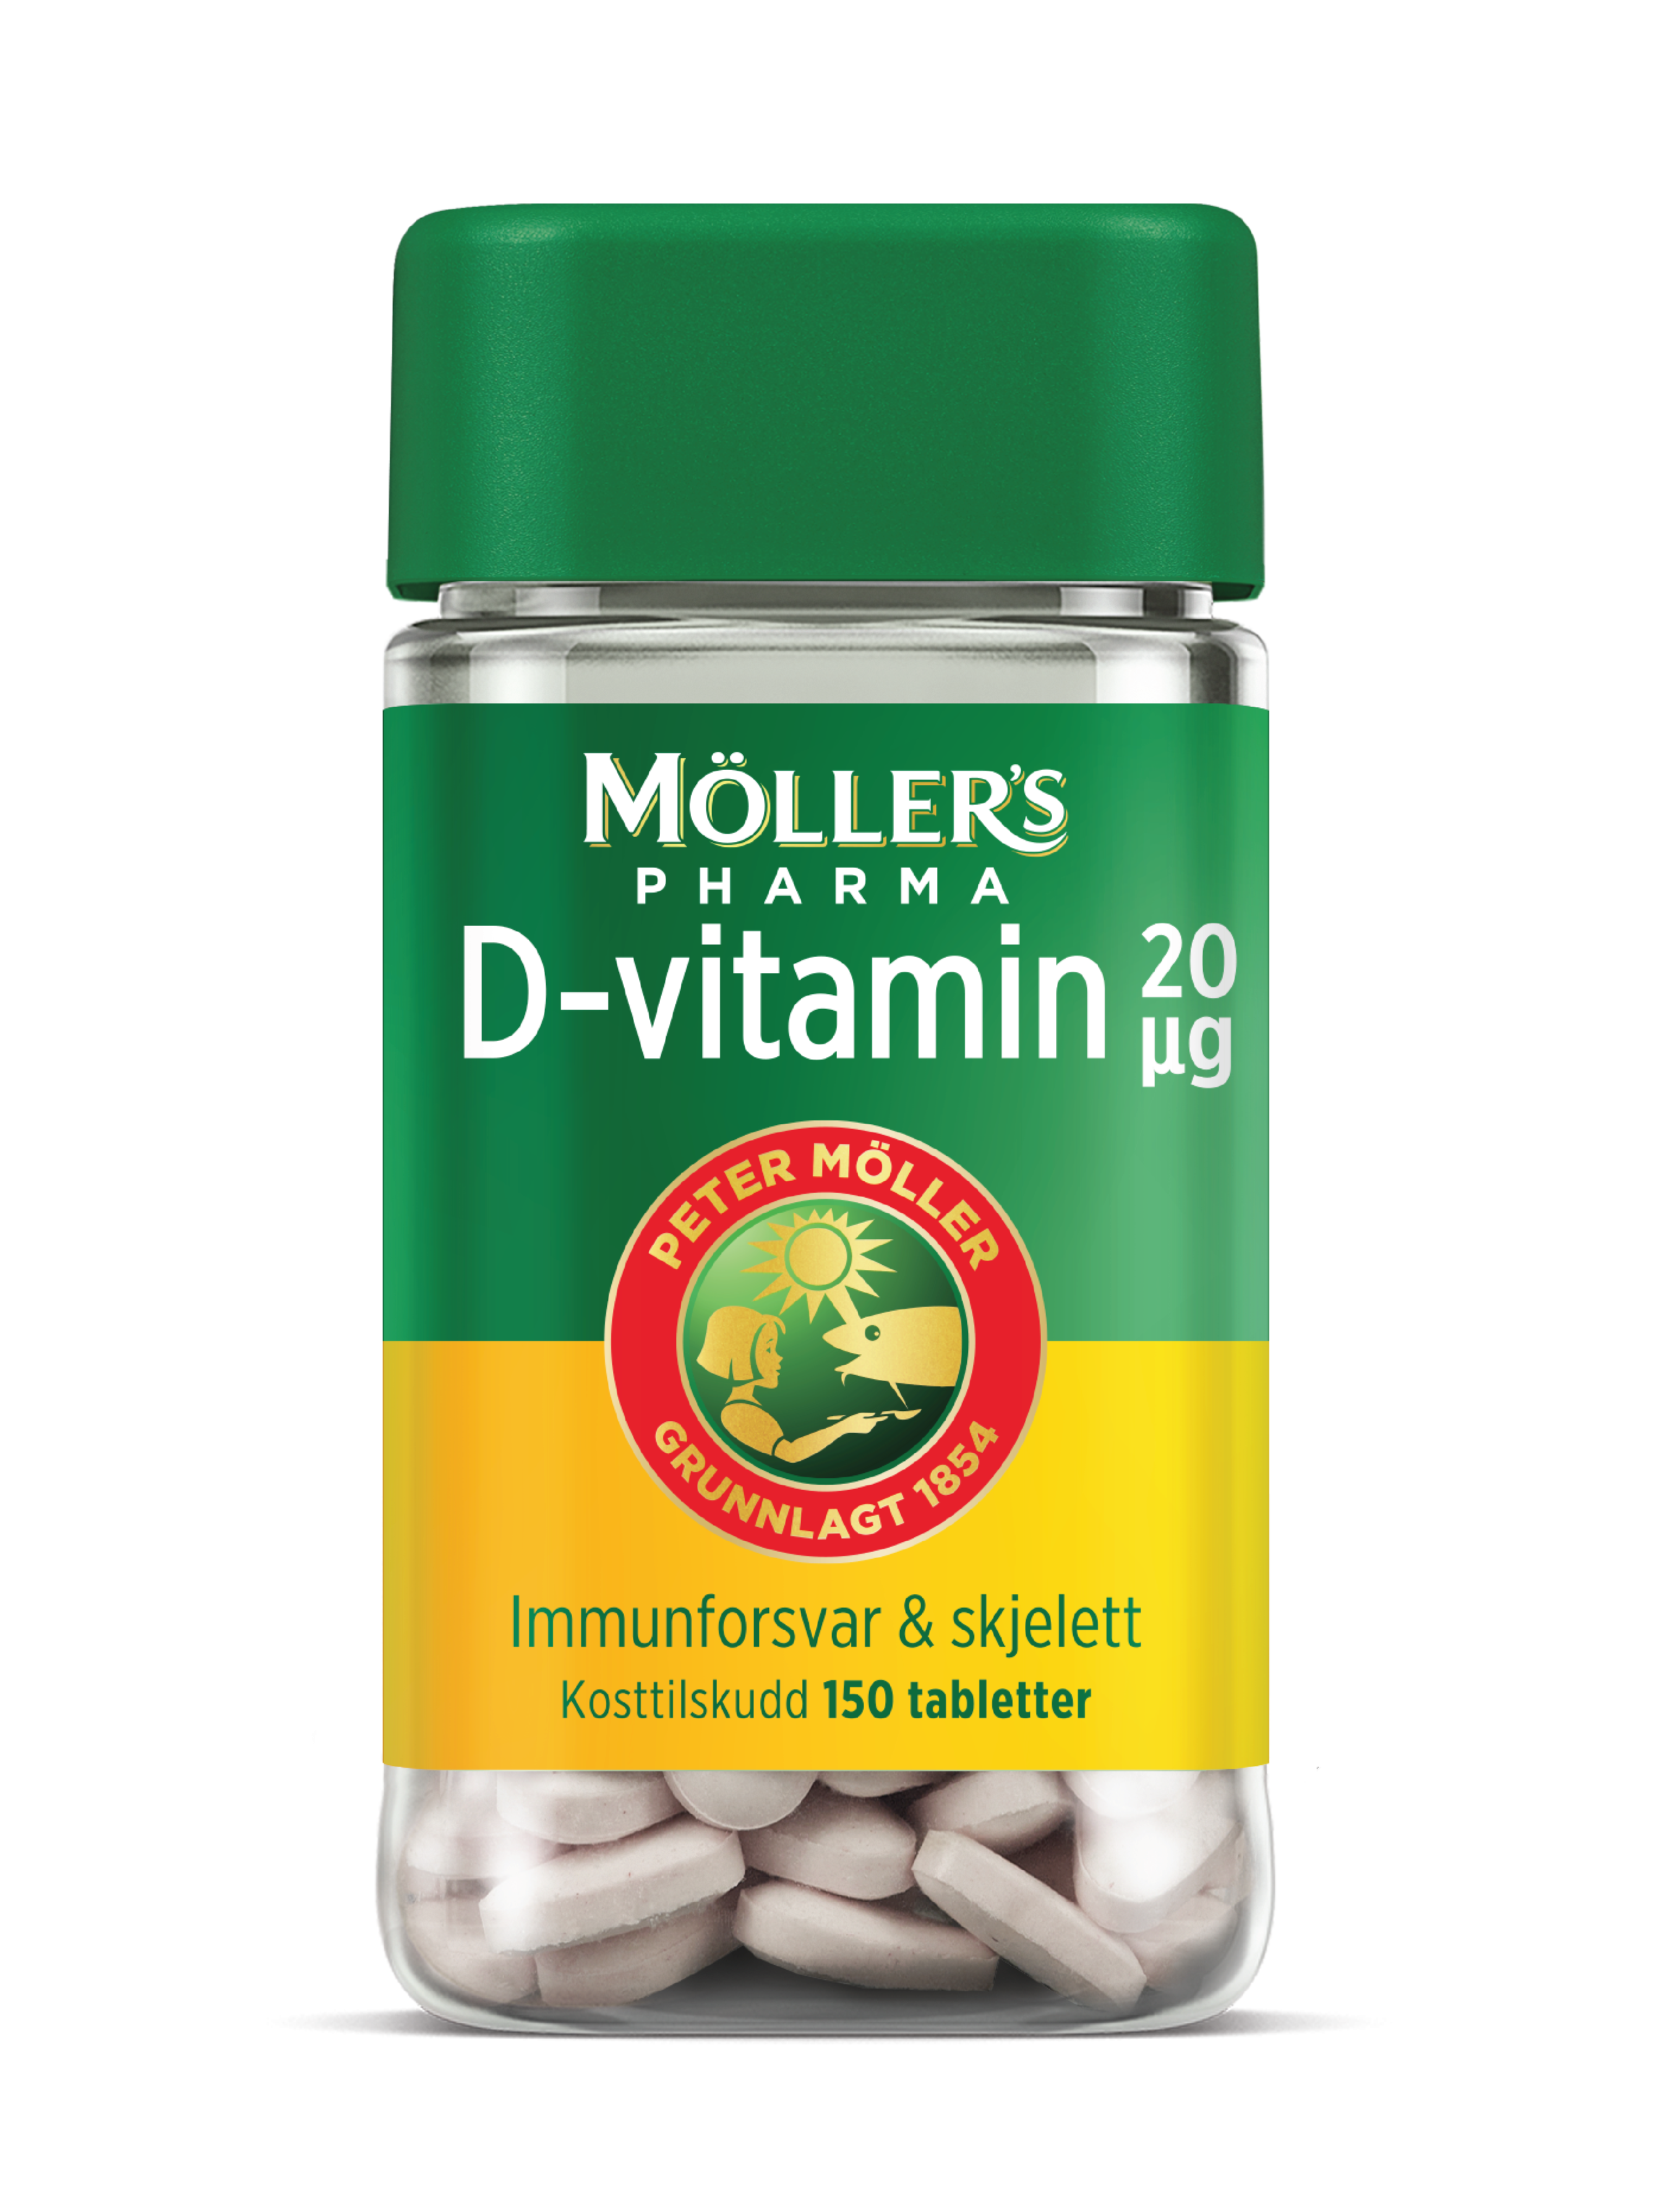 Möller's Pharma 20 µg D-vitamin tabletter, 150 stk.